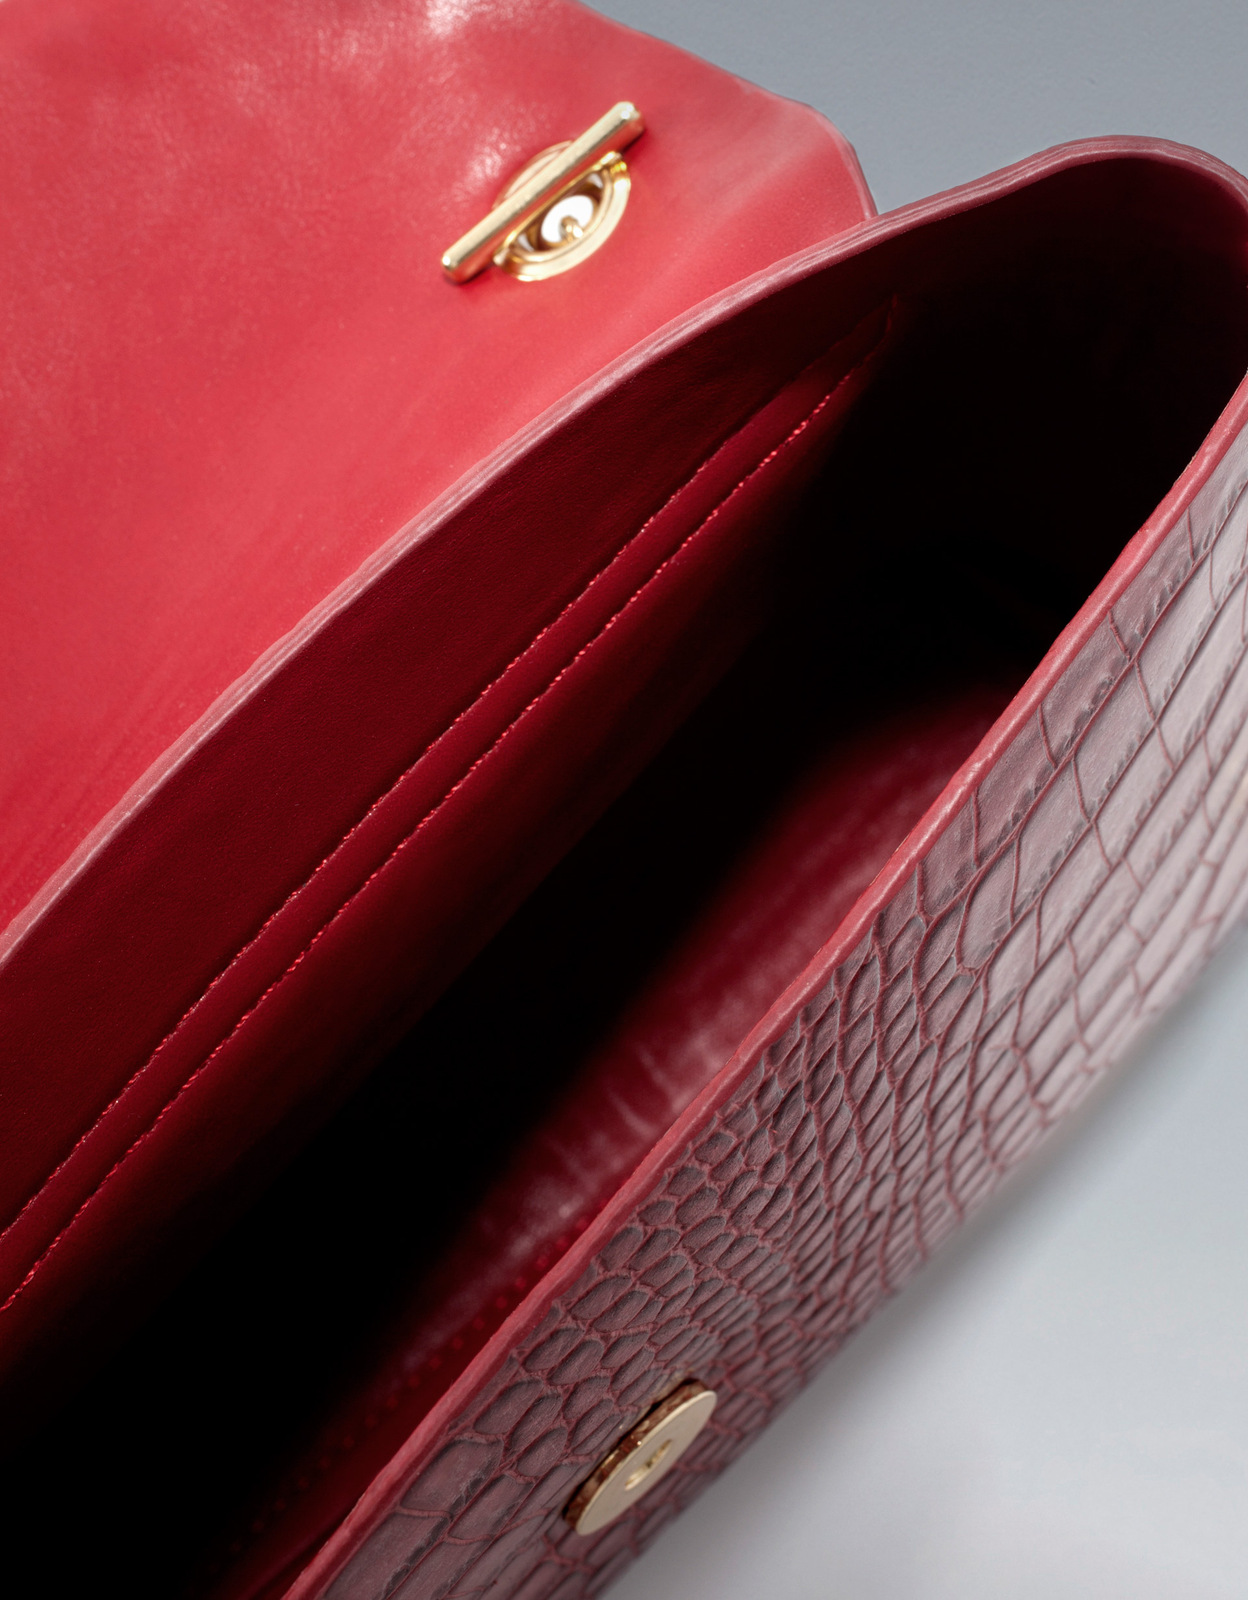 Zara vörös krokodil mintás táska 2012.10.21 fotója